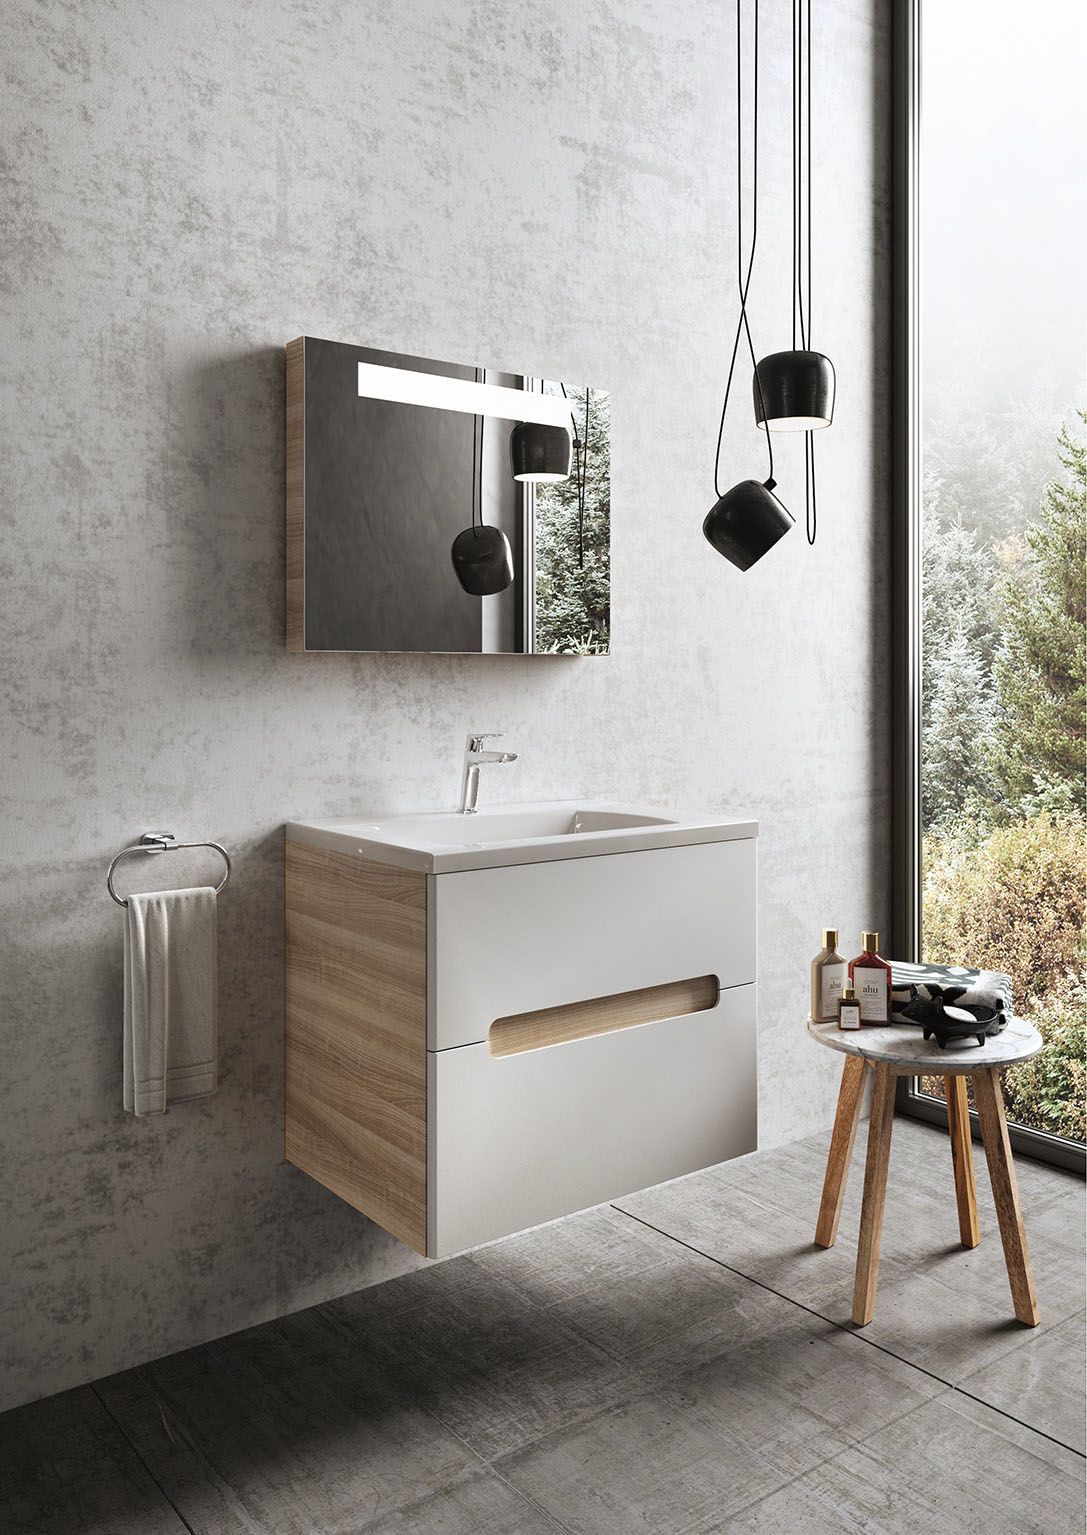 Elegantní nábytek Natural spojený s umyvadly z litého mramoru se hodí do každé moderní koupelny. Množství rozměrů i možností kombinace otevřených ploch a zavřených prostor jej předurčuje k široké paletě využití.